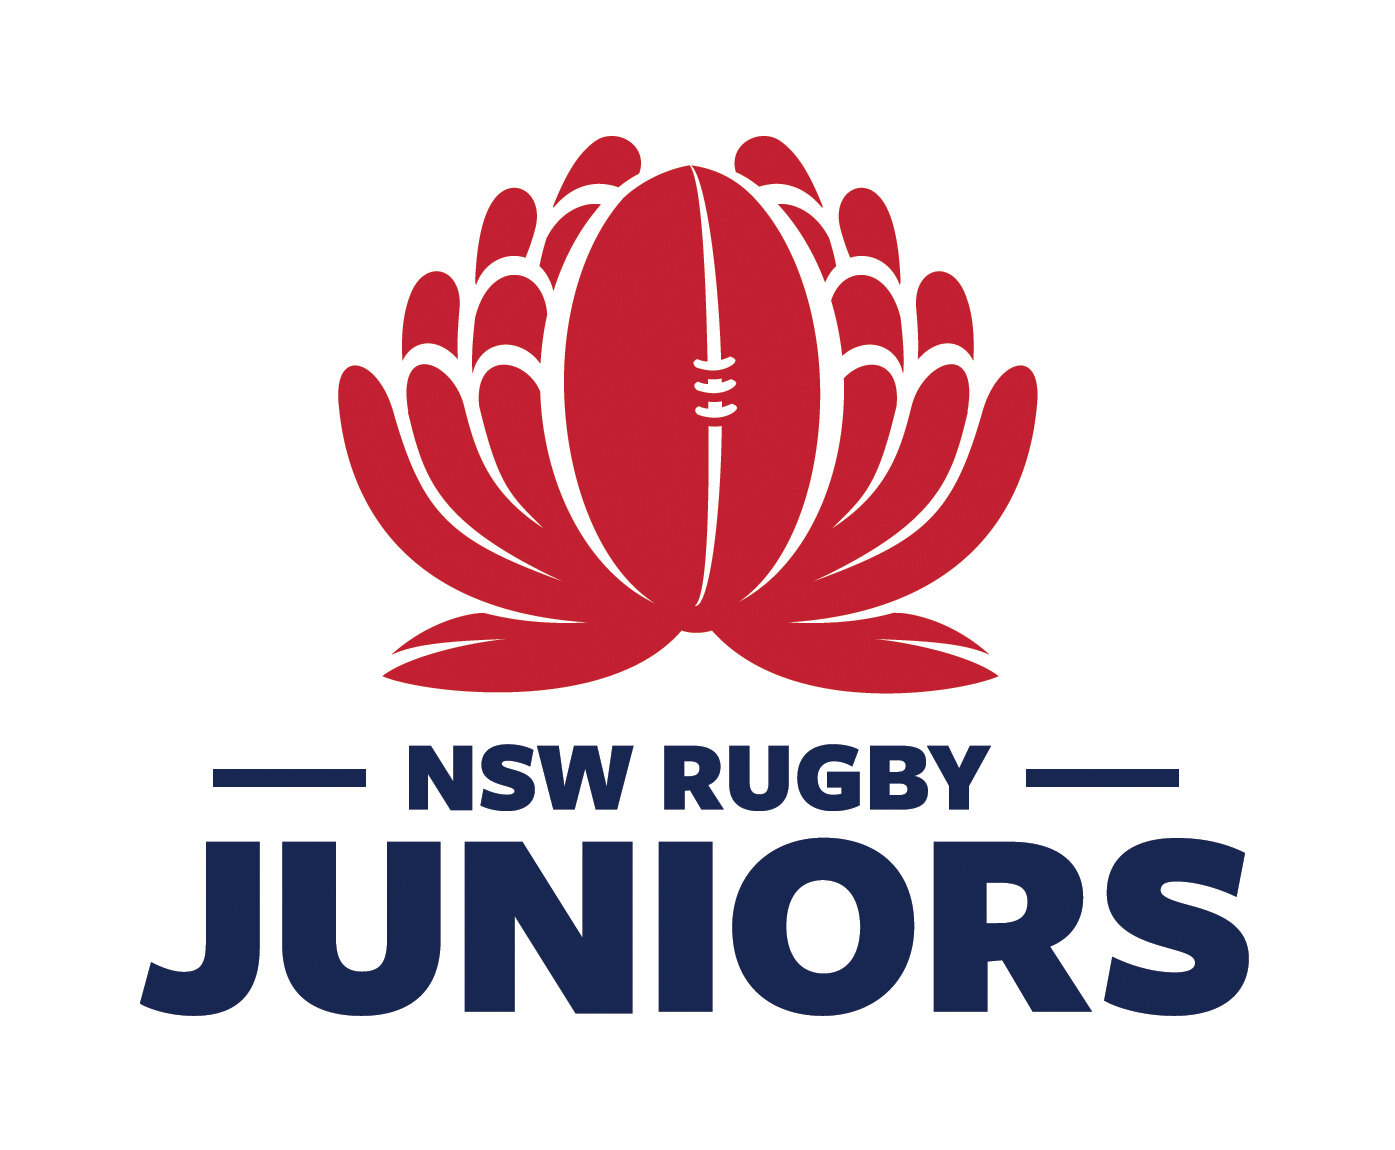 NSWRU-Juniors-Stacked-Standard.jpg